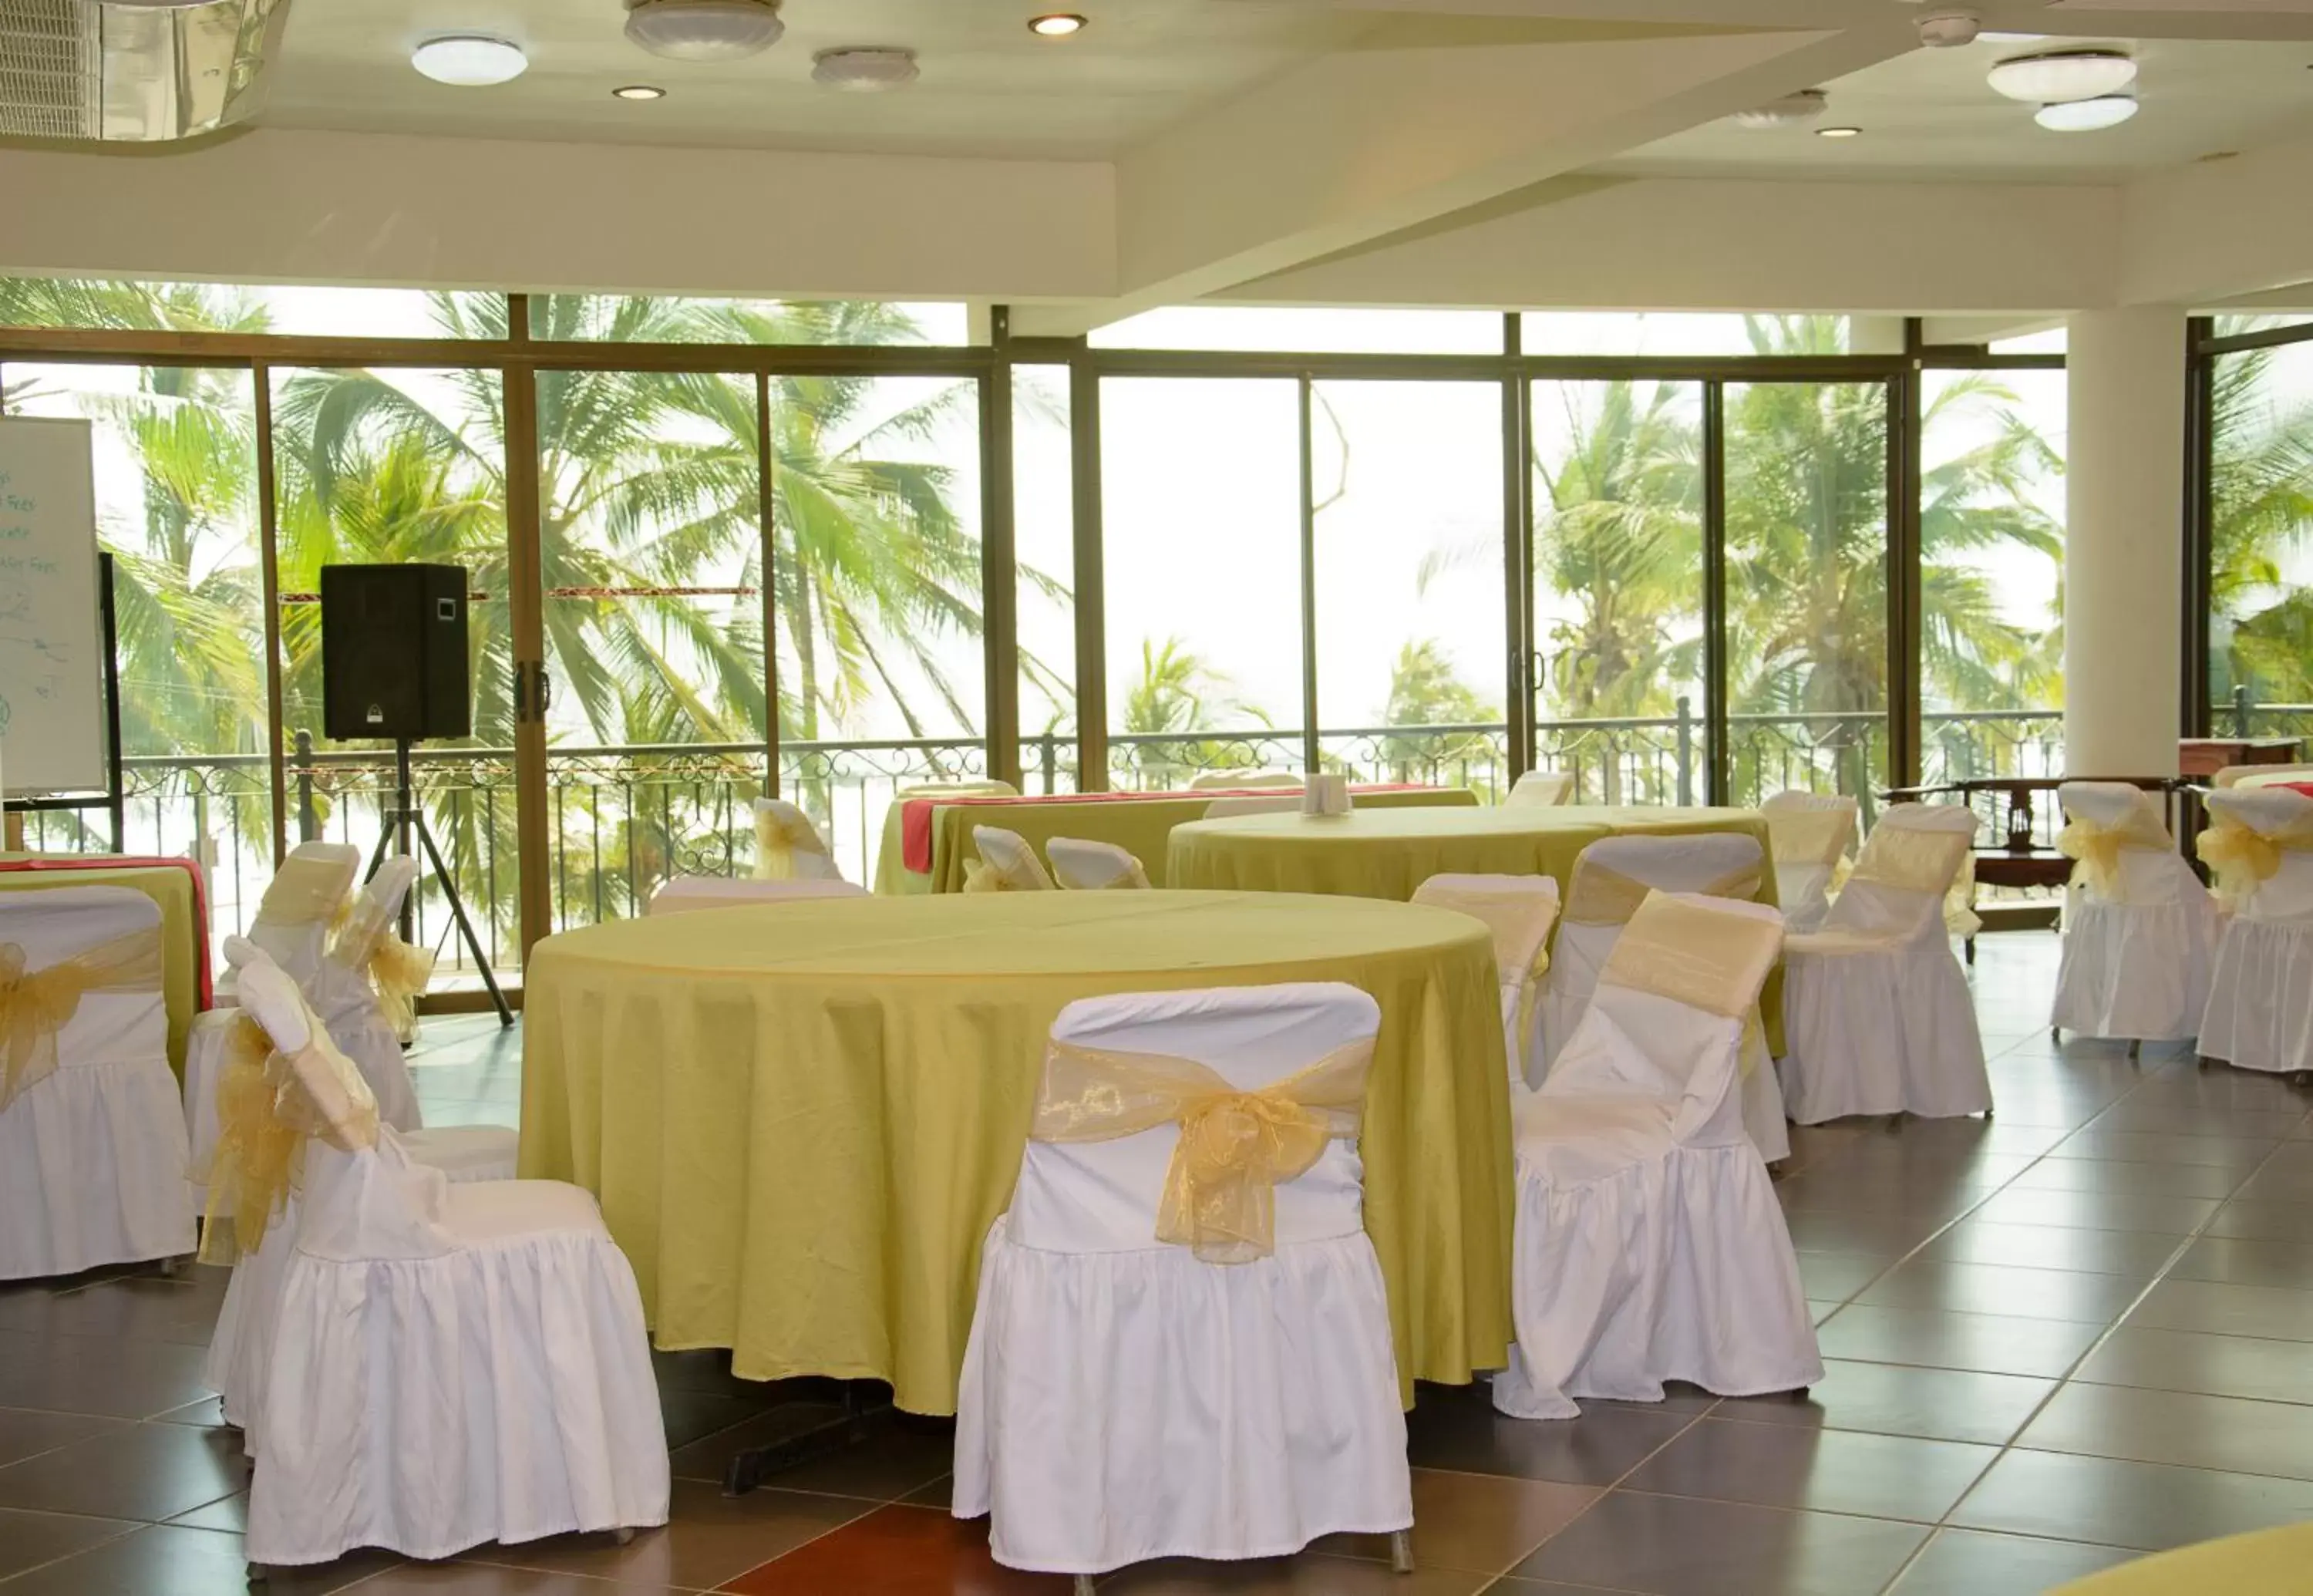 Banquet/Function facilities, Banquet Facilities in Balcon del Mar Beach Front Hotel